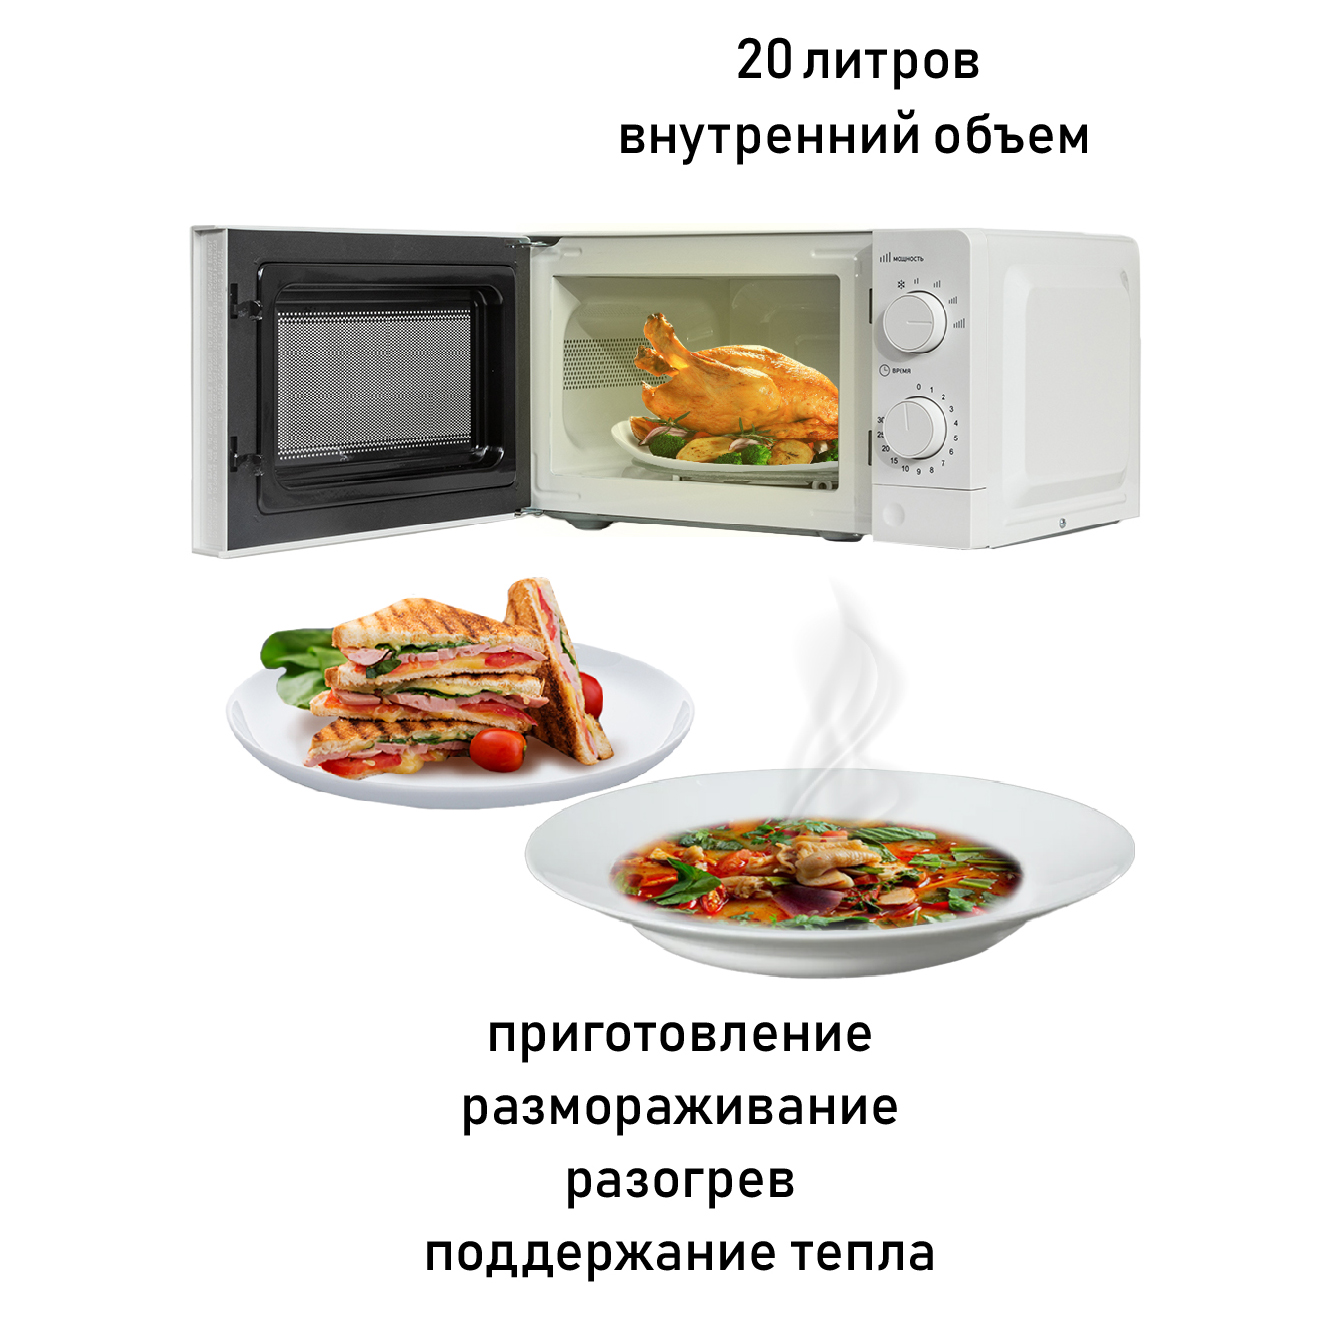 Микроволновая печь (СВЧ) Supra 20MW66 купить в Красноярске